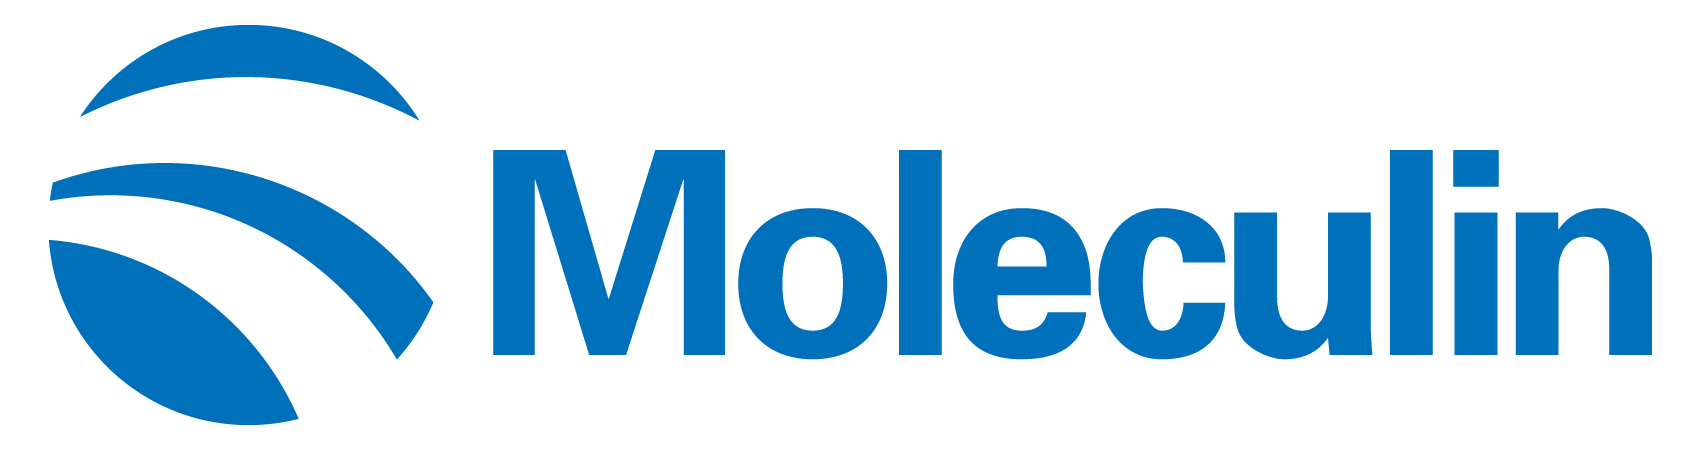 moleculin-logo_horiza57.jpg